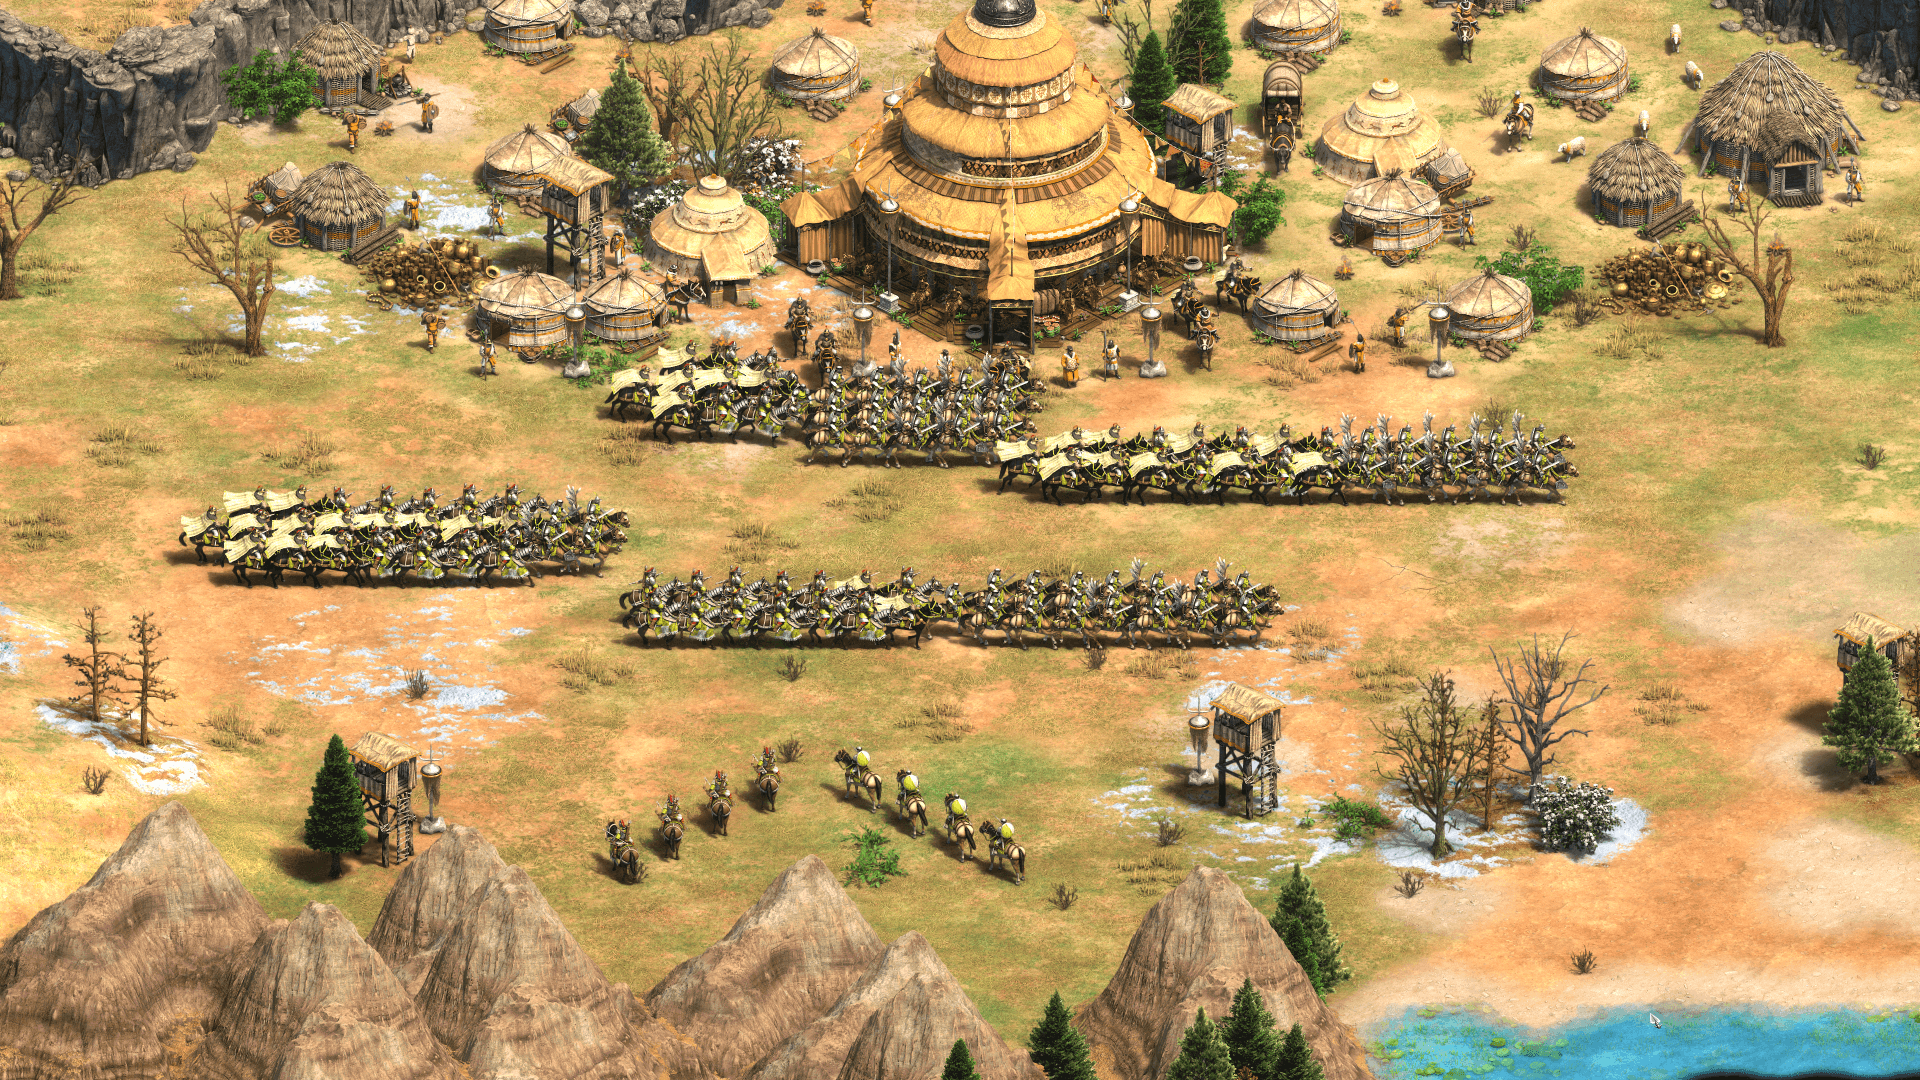 Für Vorbesteller kostet die neue Version von "Age of Empires 2" derzeit etwa 20 Euro. Das Spiel kommt auf PC für Steam und auf Xbox One. PC- und Xbox-Spieler sollen dabei gegeneinander zocken können.